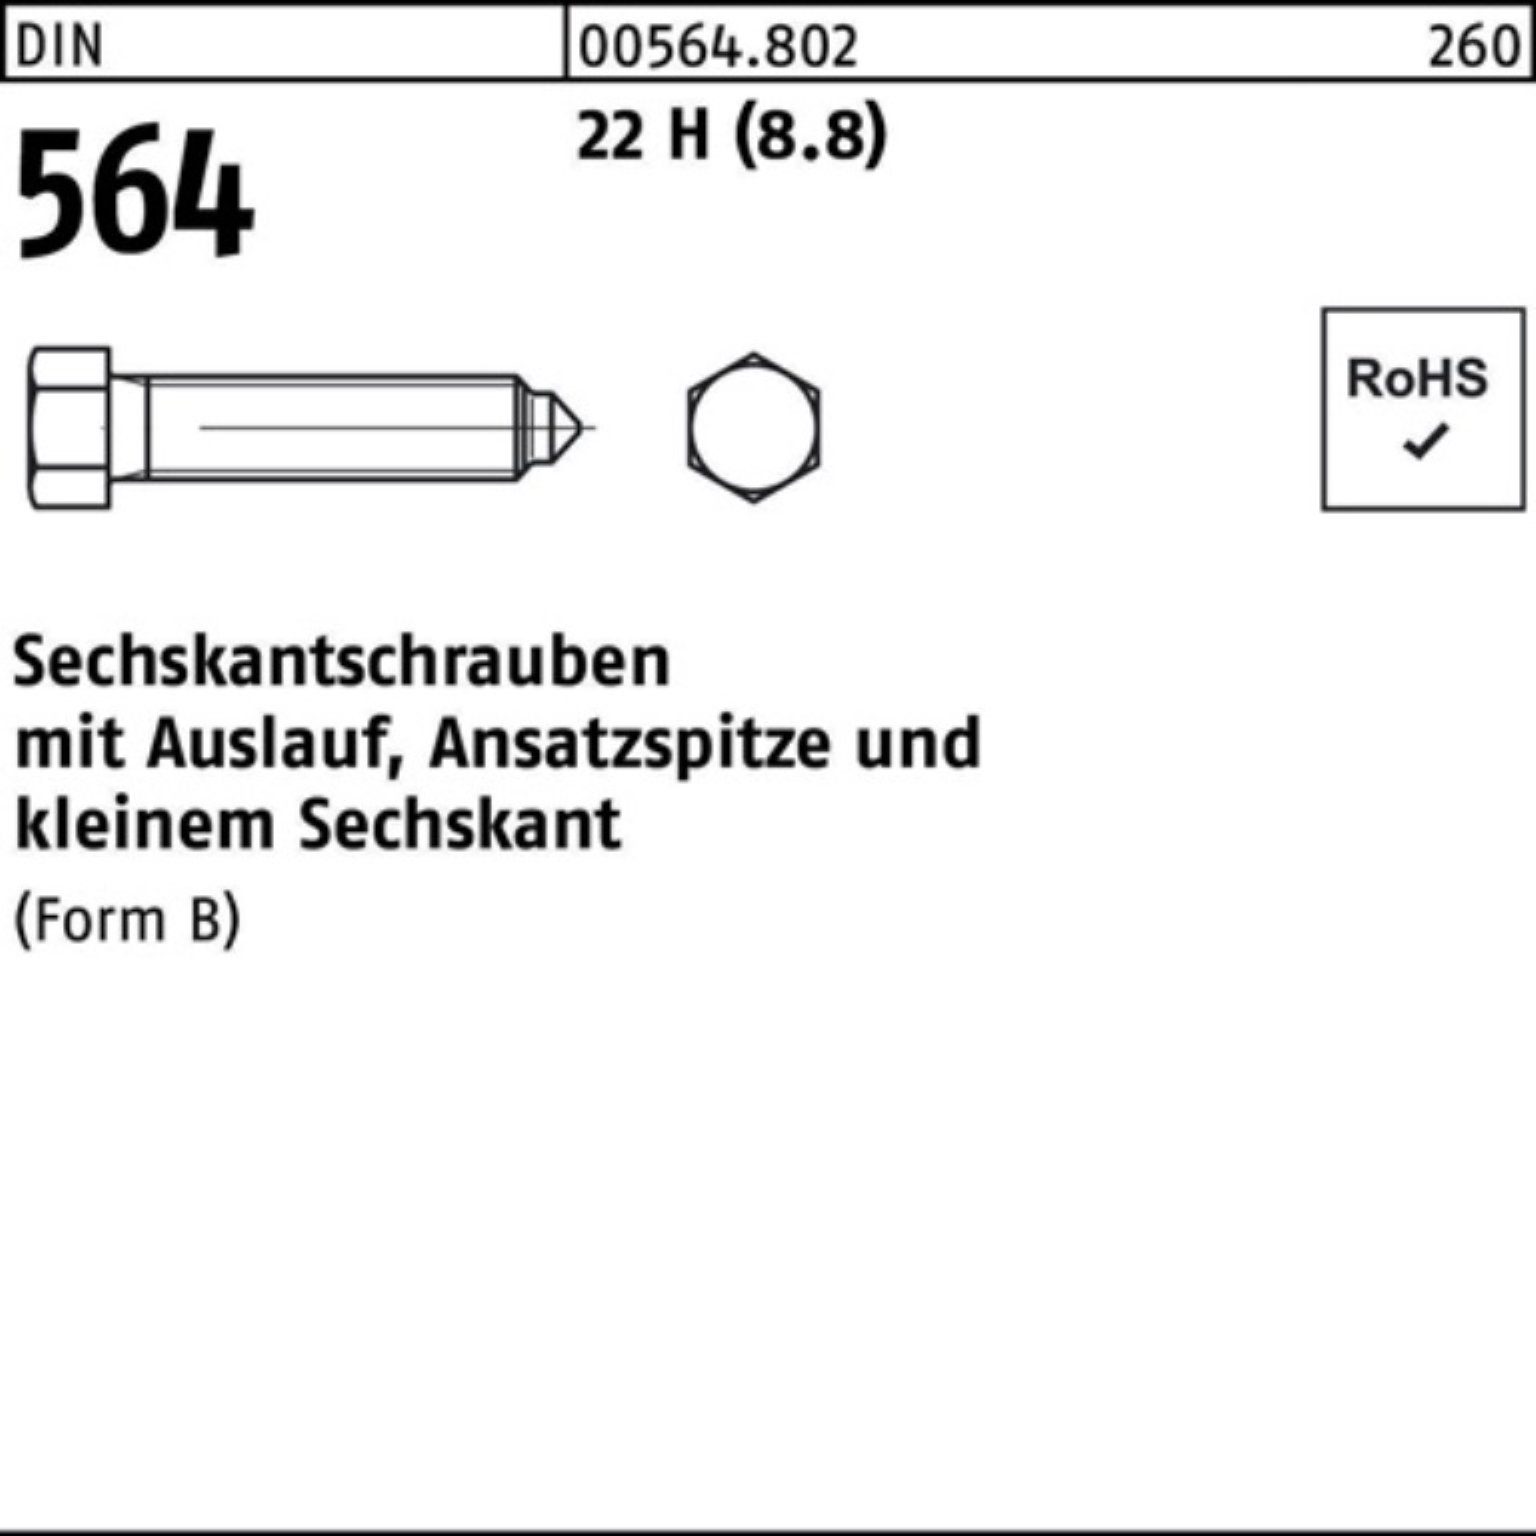 Sechskantschraube Reyher DIN 22 564 BM 60 24x Ansatzspitze/Auslauf 100er Sechskantschraube Pack